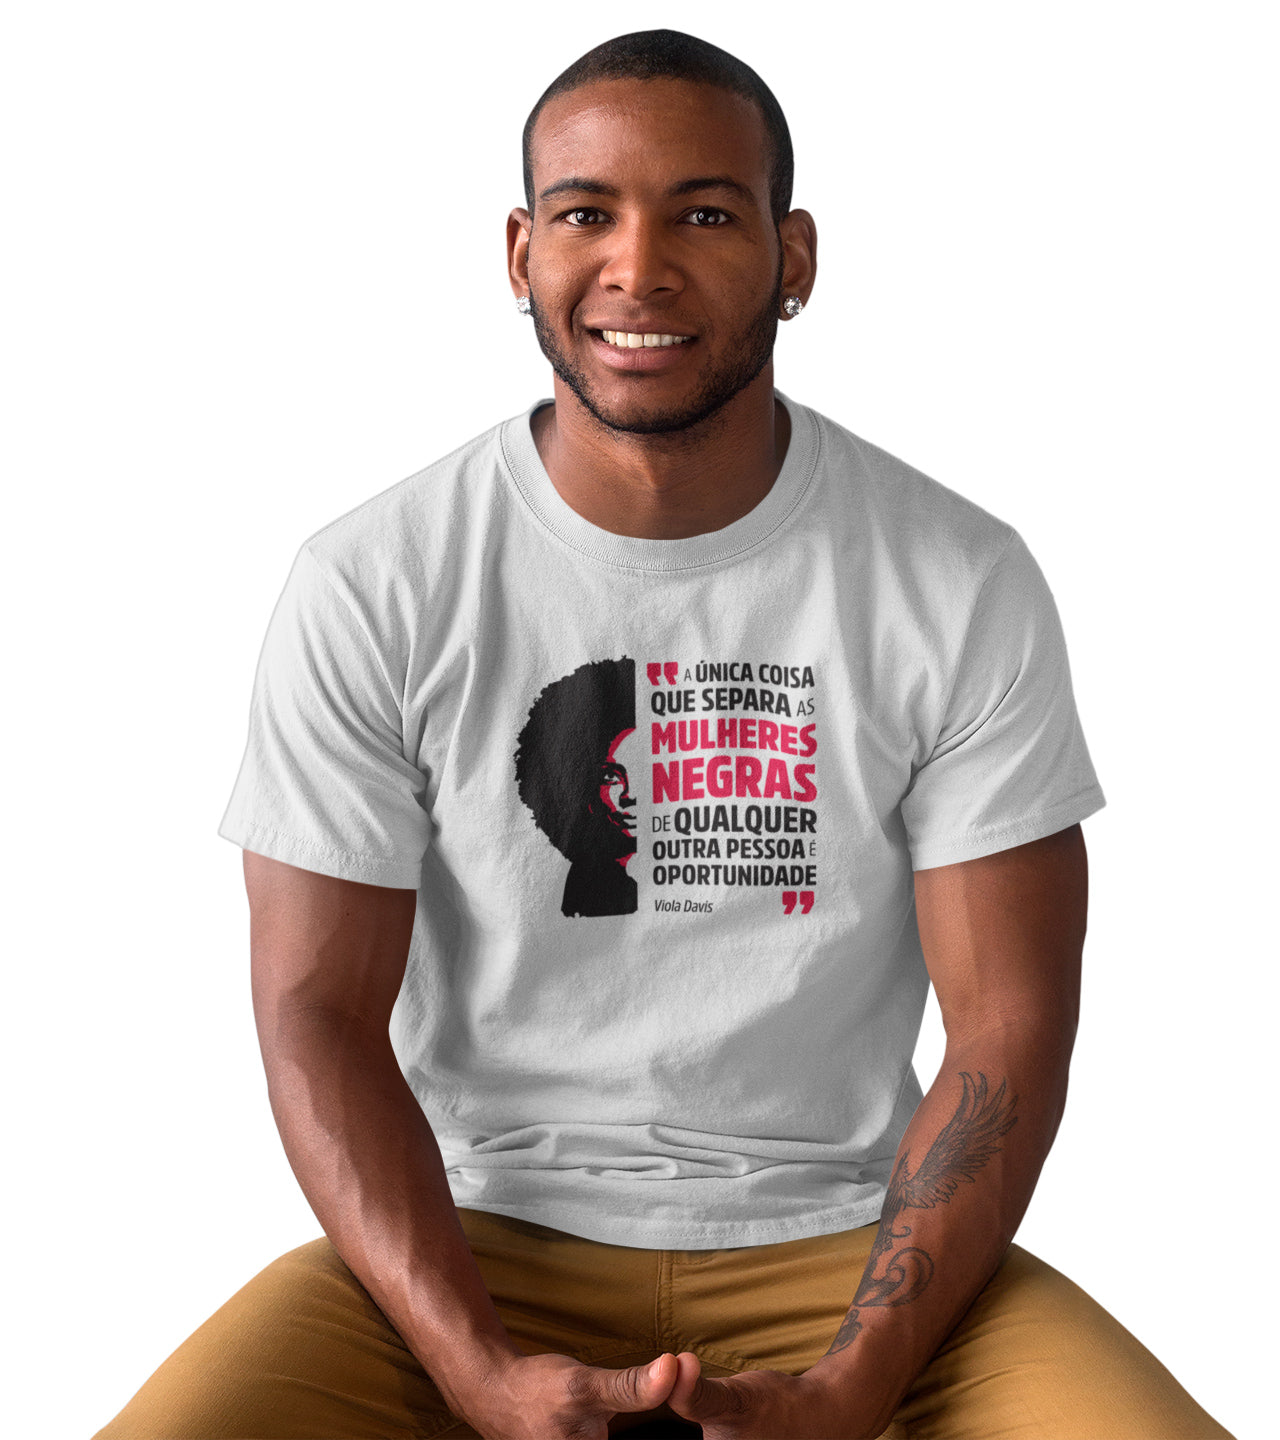 homem vestindo a camiseta masculina cor branca com estampa ilustração Viola Davis e a frase "a única coisa que separa as mulheres negras de qualquer outra pessoa é a oportunidade"